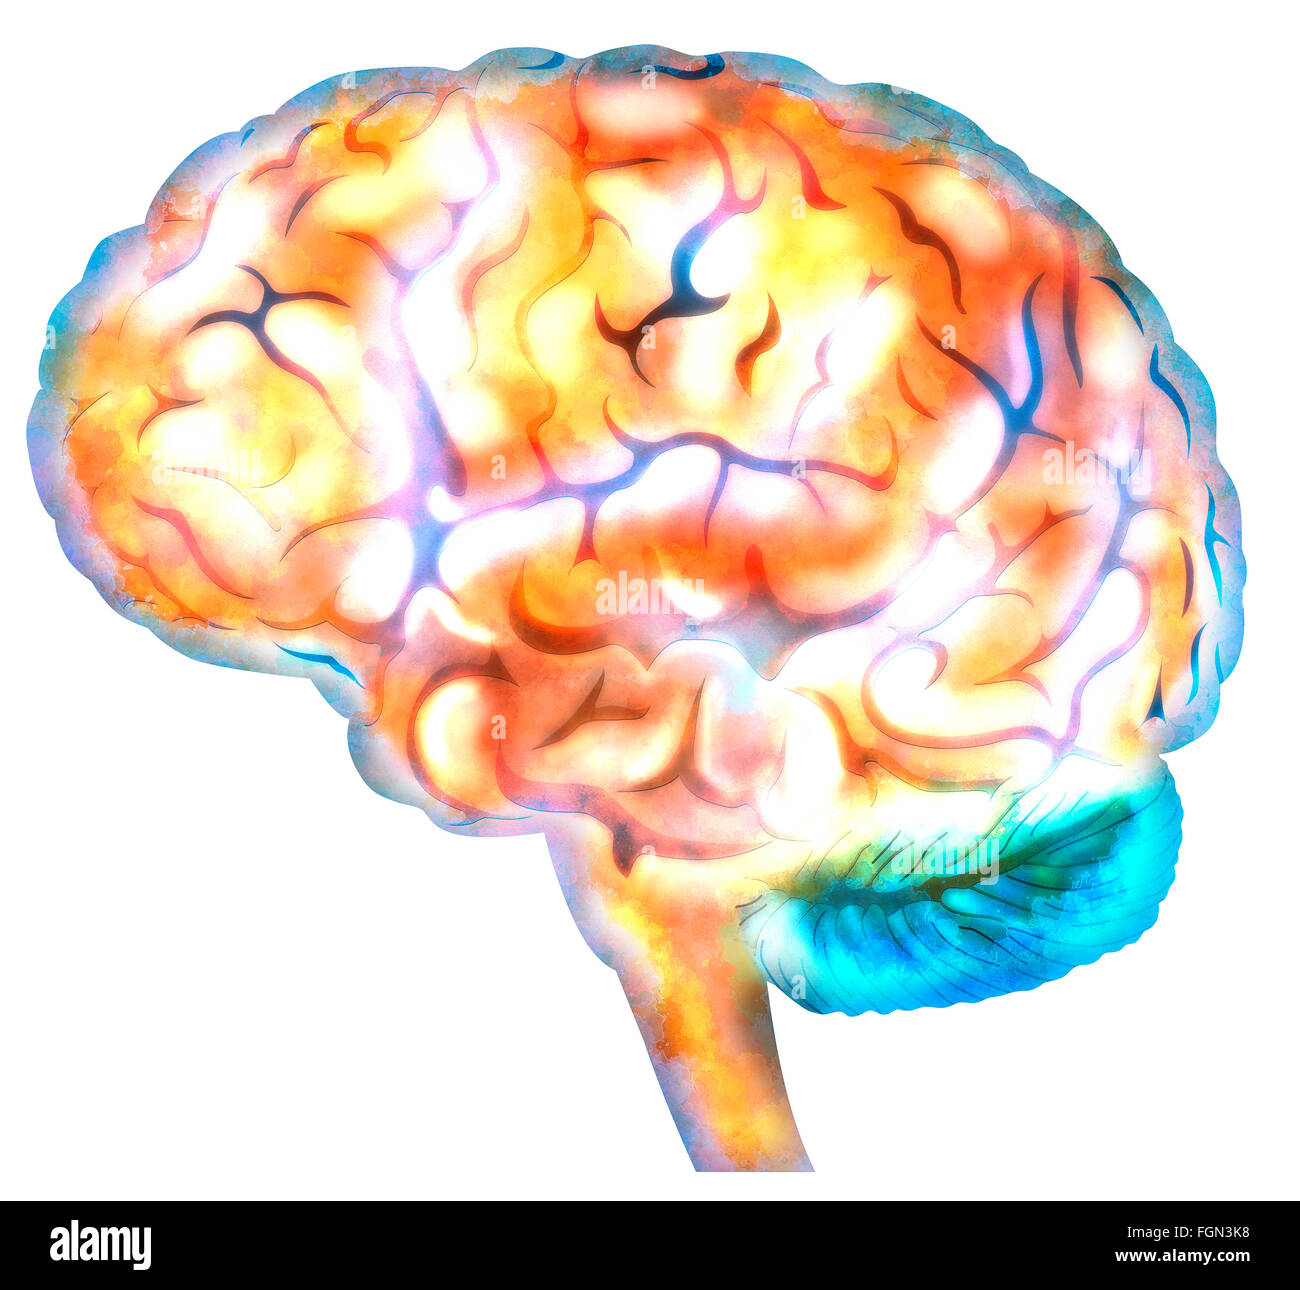 Sinapsis neuronal del cerebro, la mente, el razonamiento operativo Foto de stock